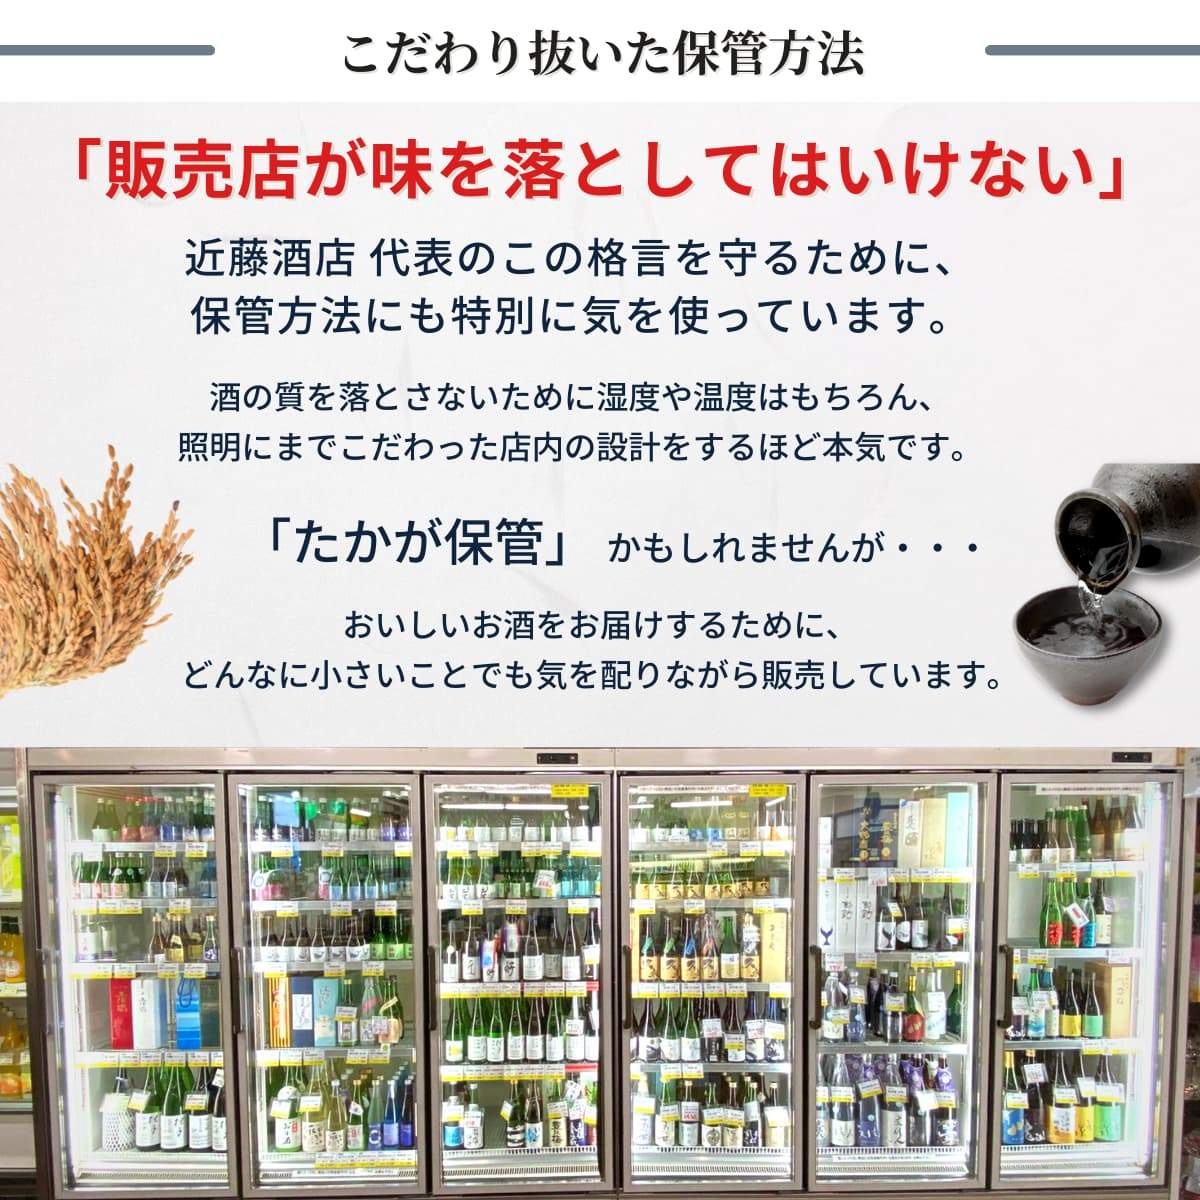 【夏のお酒】 桂月 特別純米酒 超辛口60 夏の生酒 1800mL